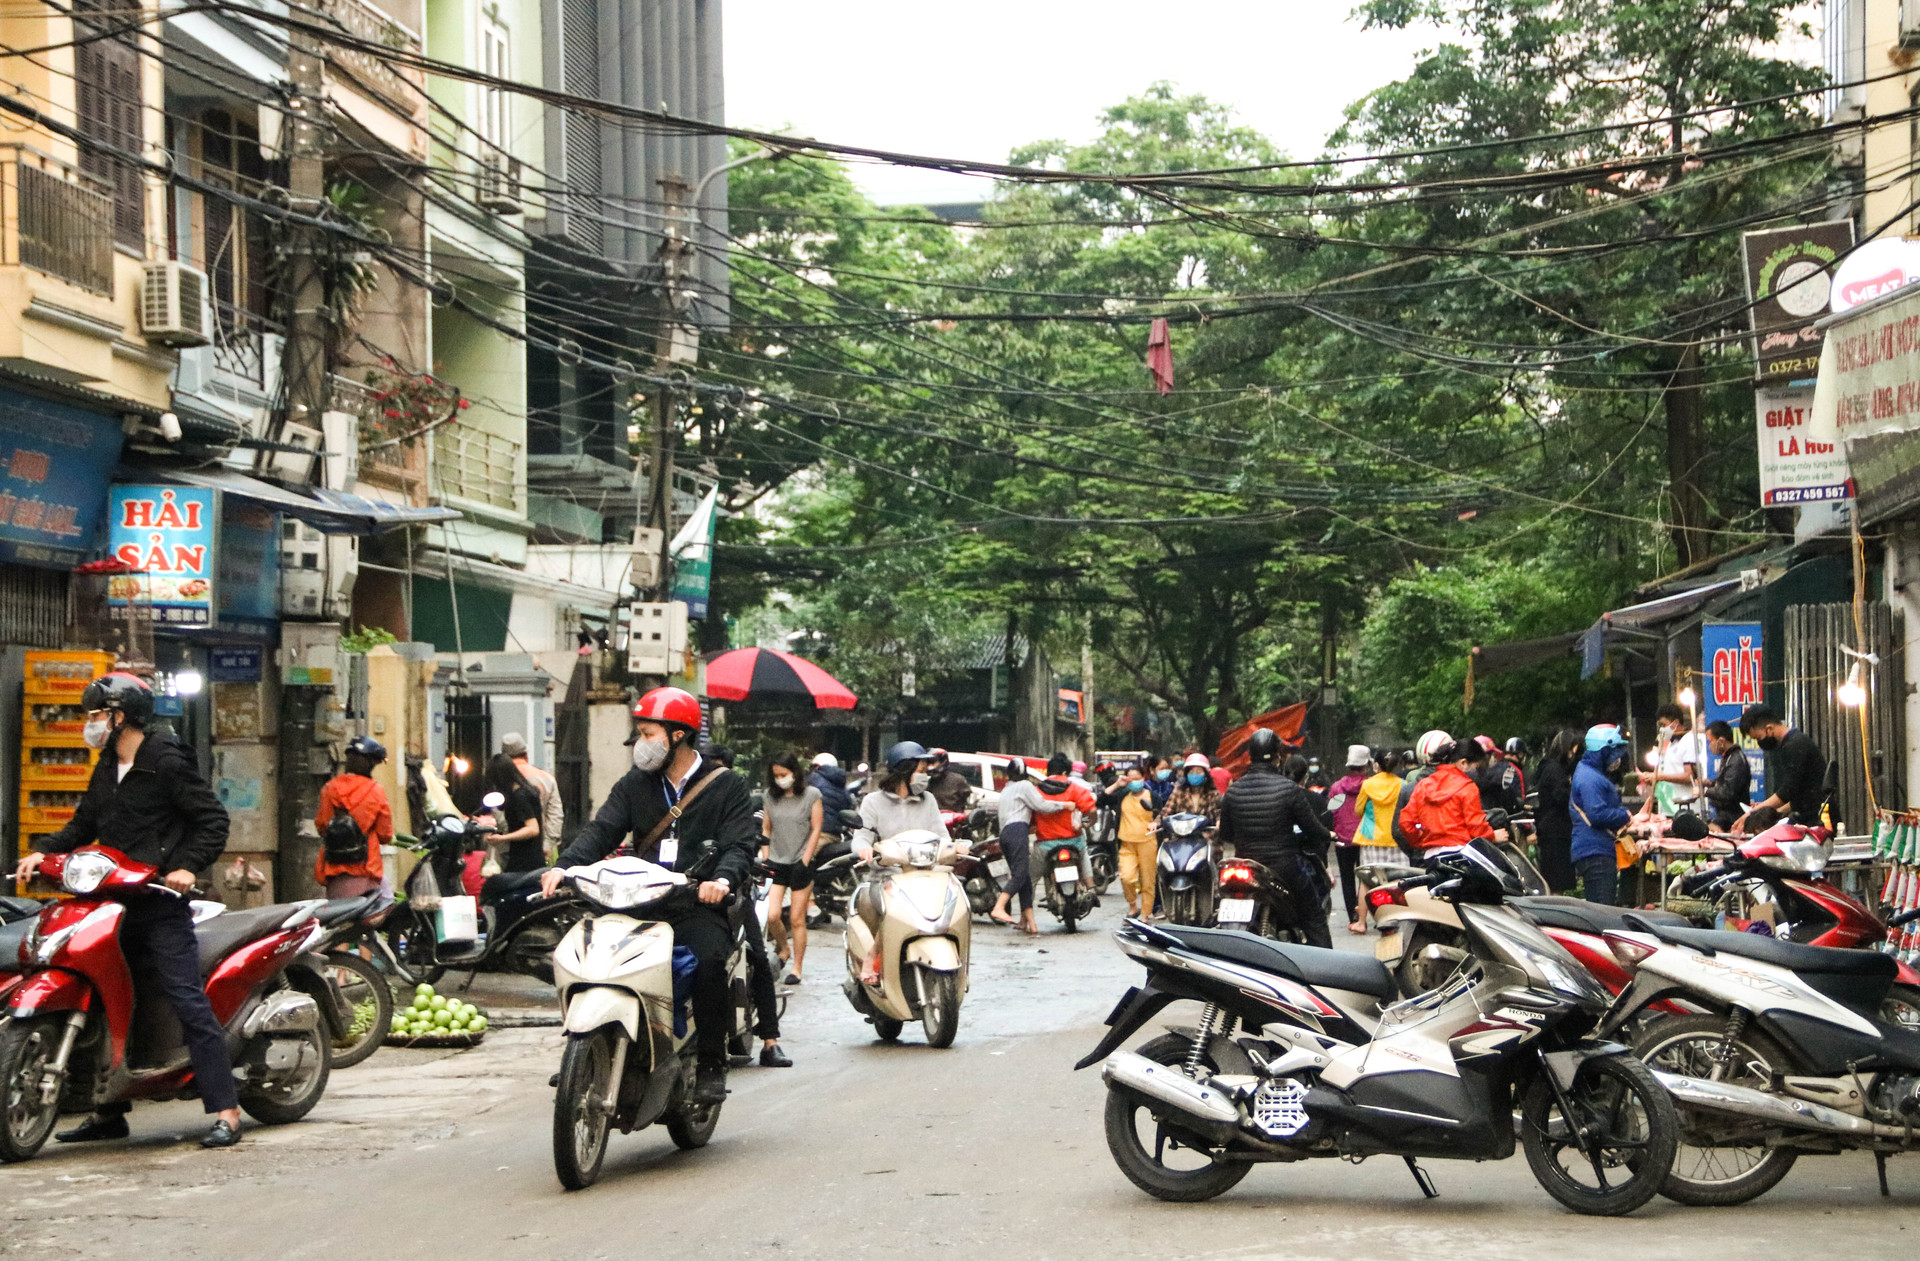 Chùm ảnh: Các tụ điểm công cộng tại Hà Nội dần trở nên đông đúc sau một tuần thực hiện cách ly xã hội - Ảnh 3.